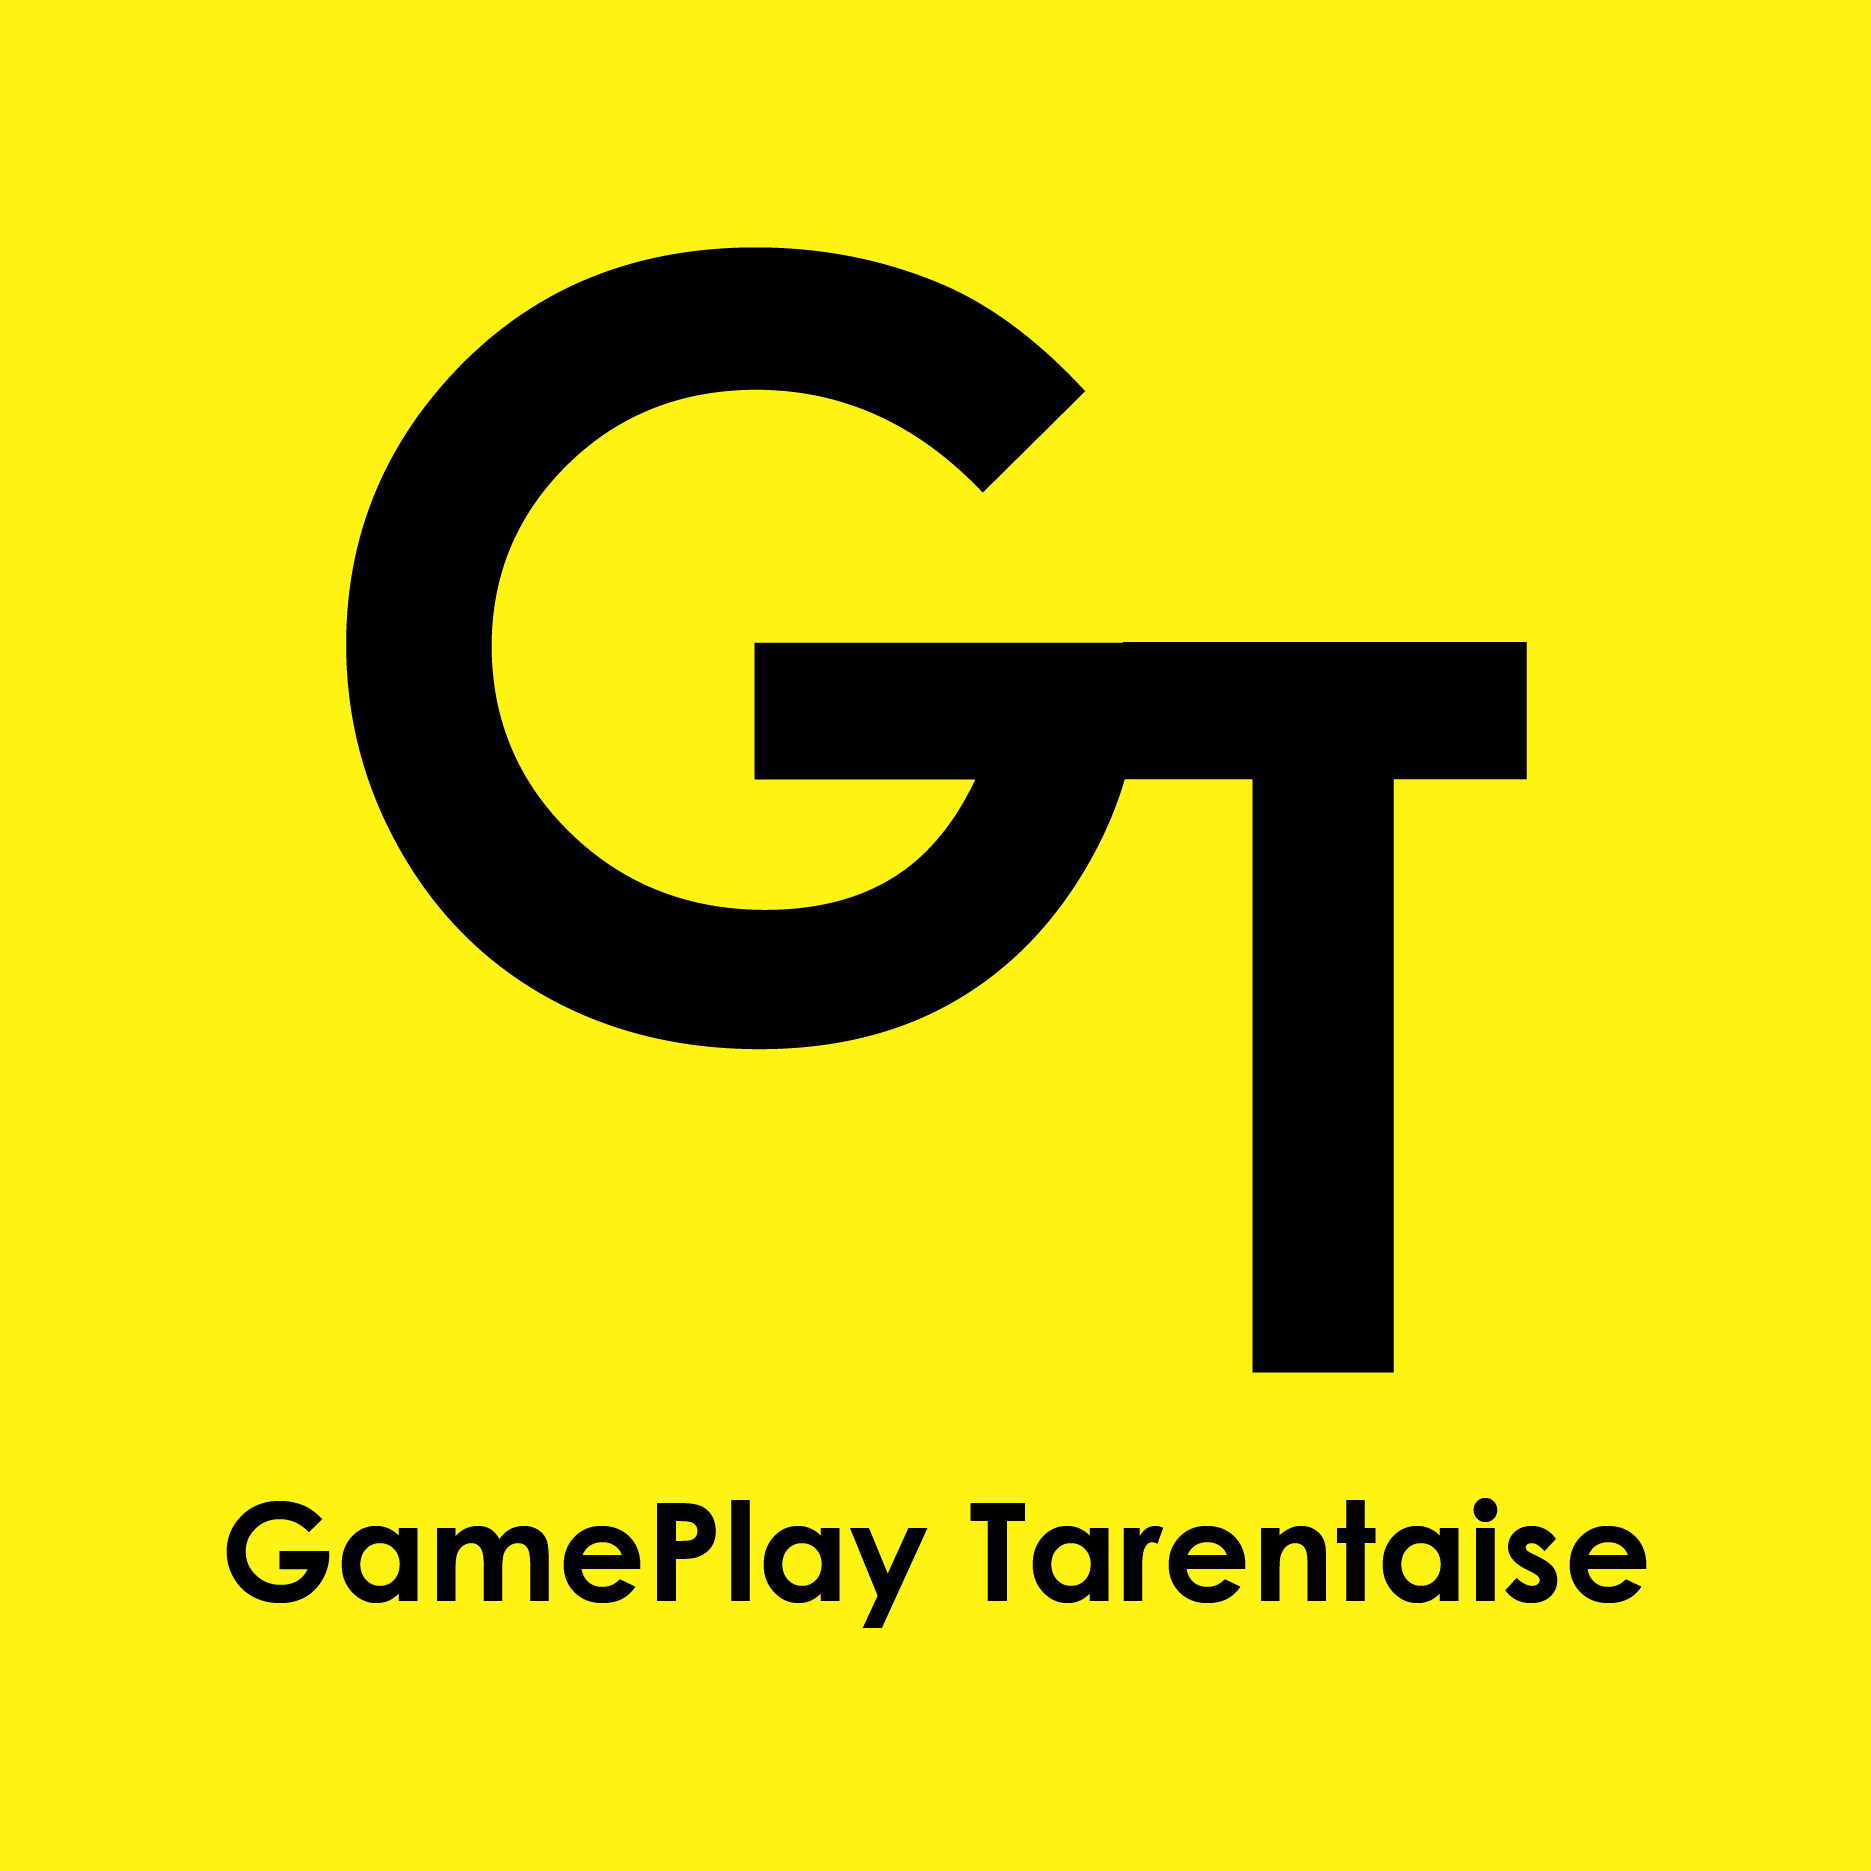 GamePlay Tarentaise